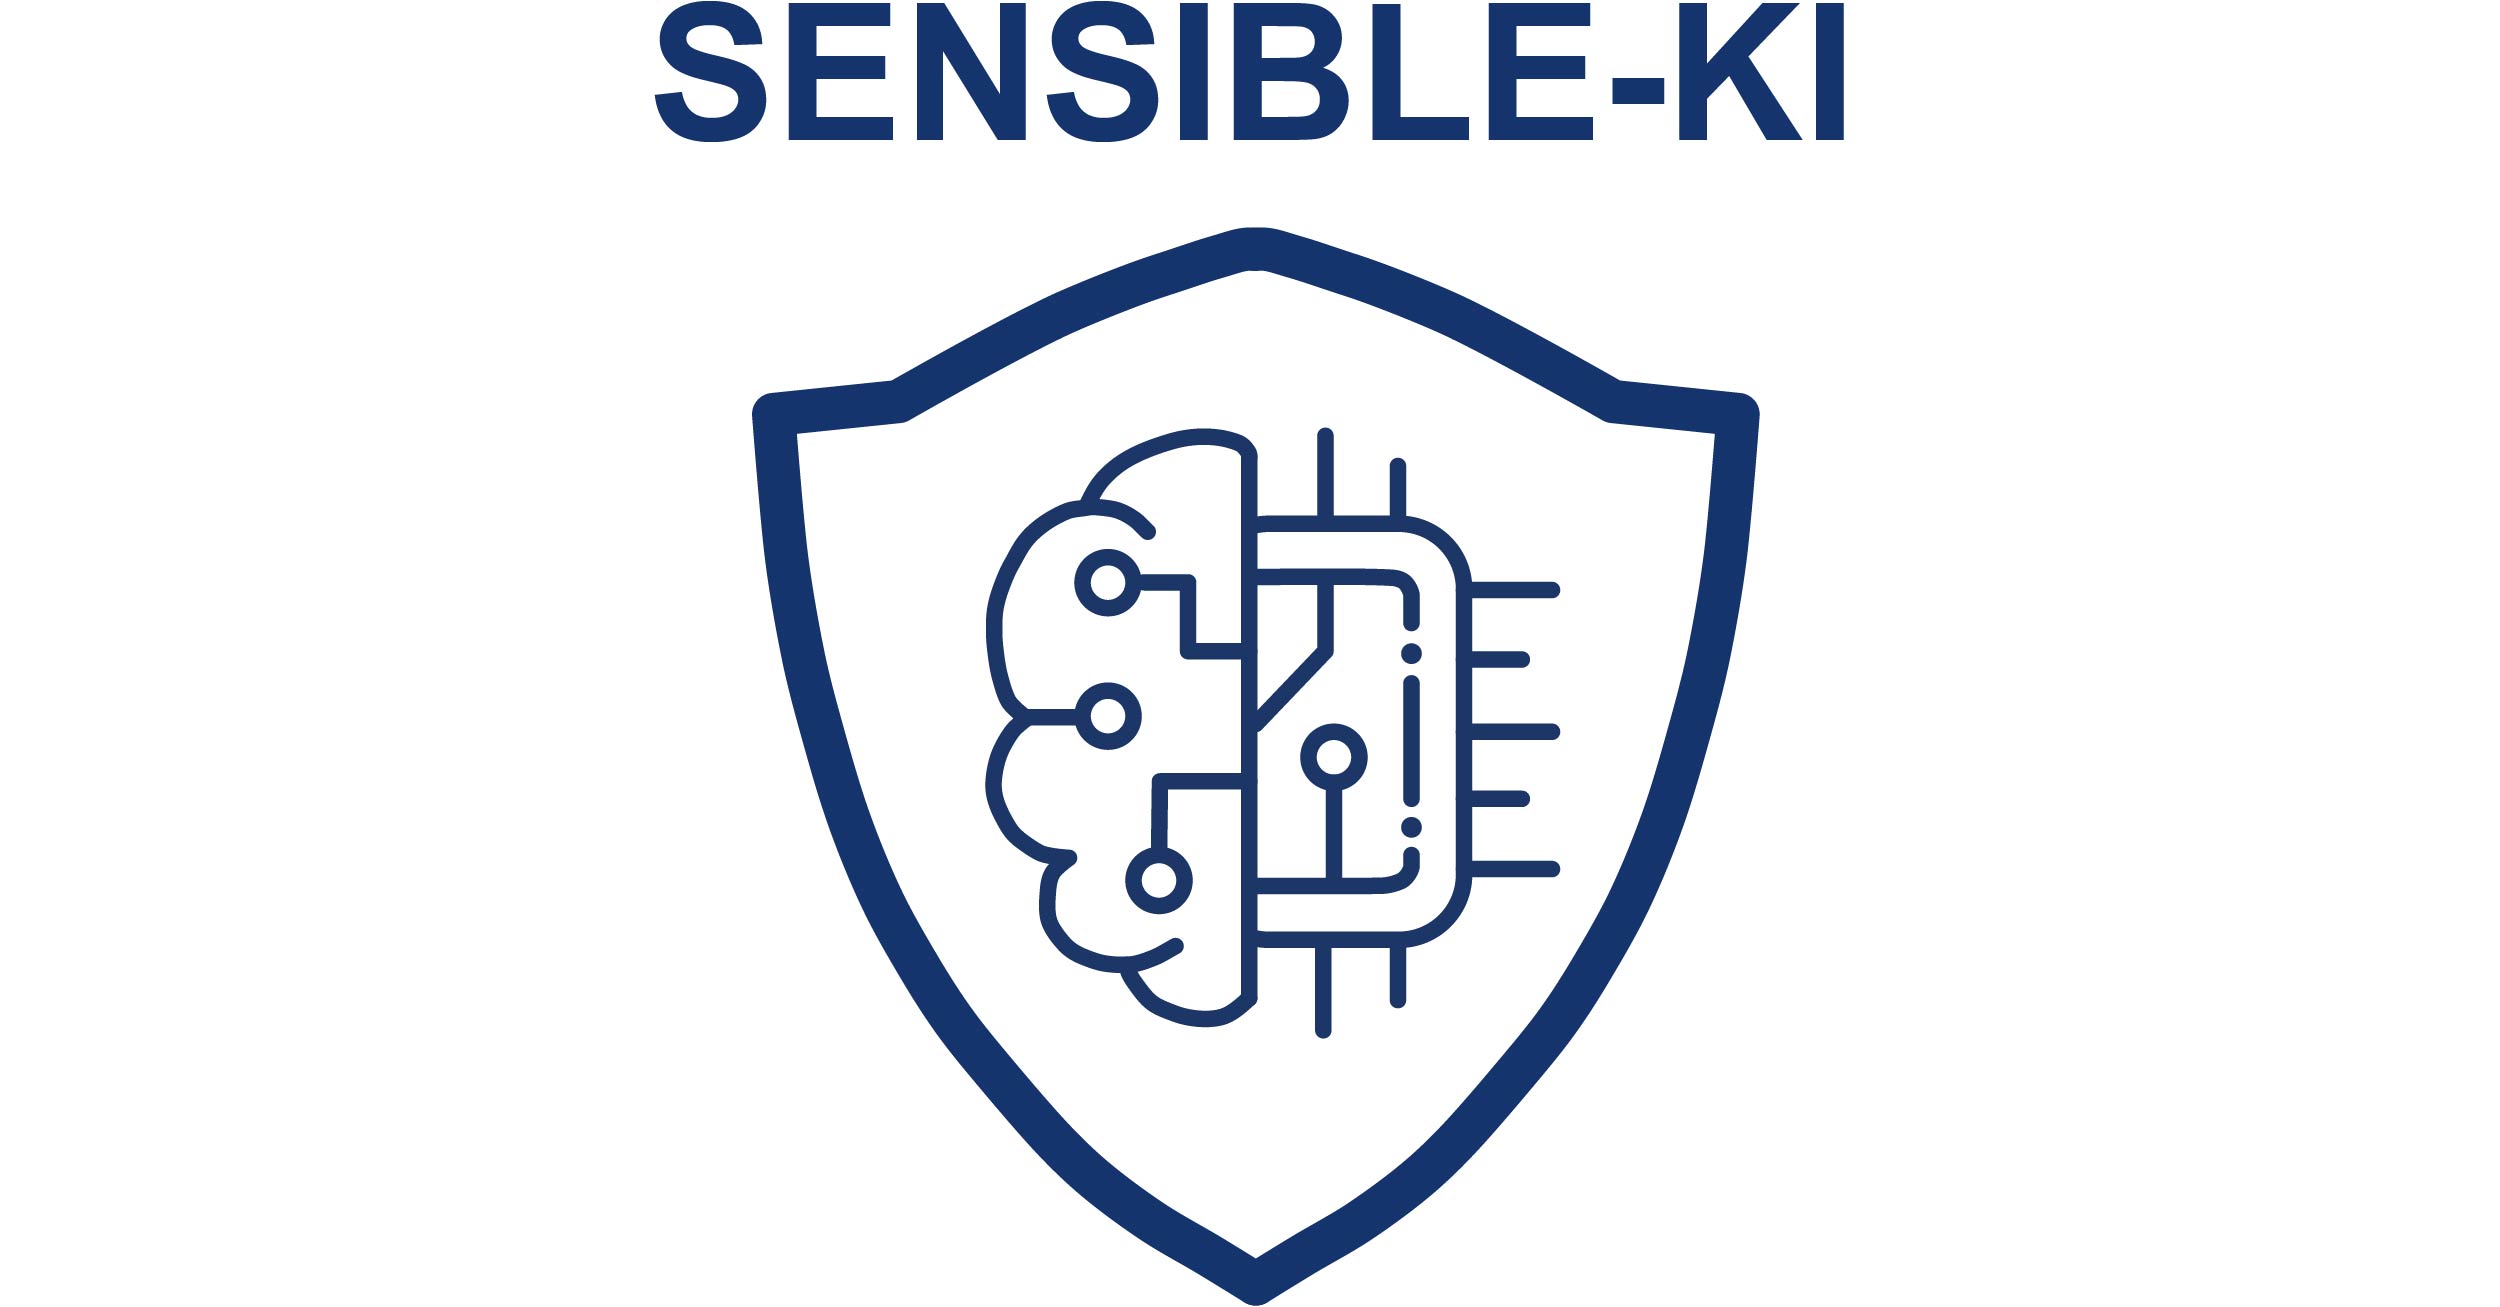 Das Projekt SENSIBLE-KI erforscht Lösungen, um Angriffe auf KI-Systeme im mobilen und eingebetteten Kontext zu erschweren oder komplett zu verhindern.